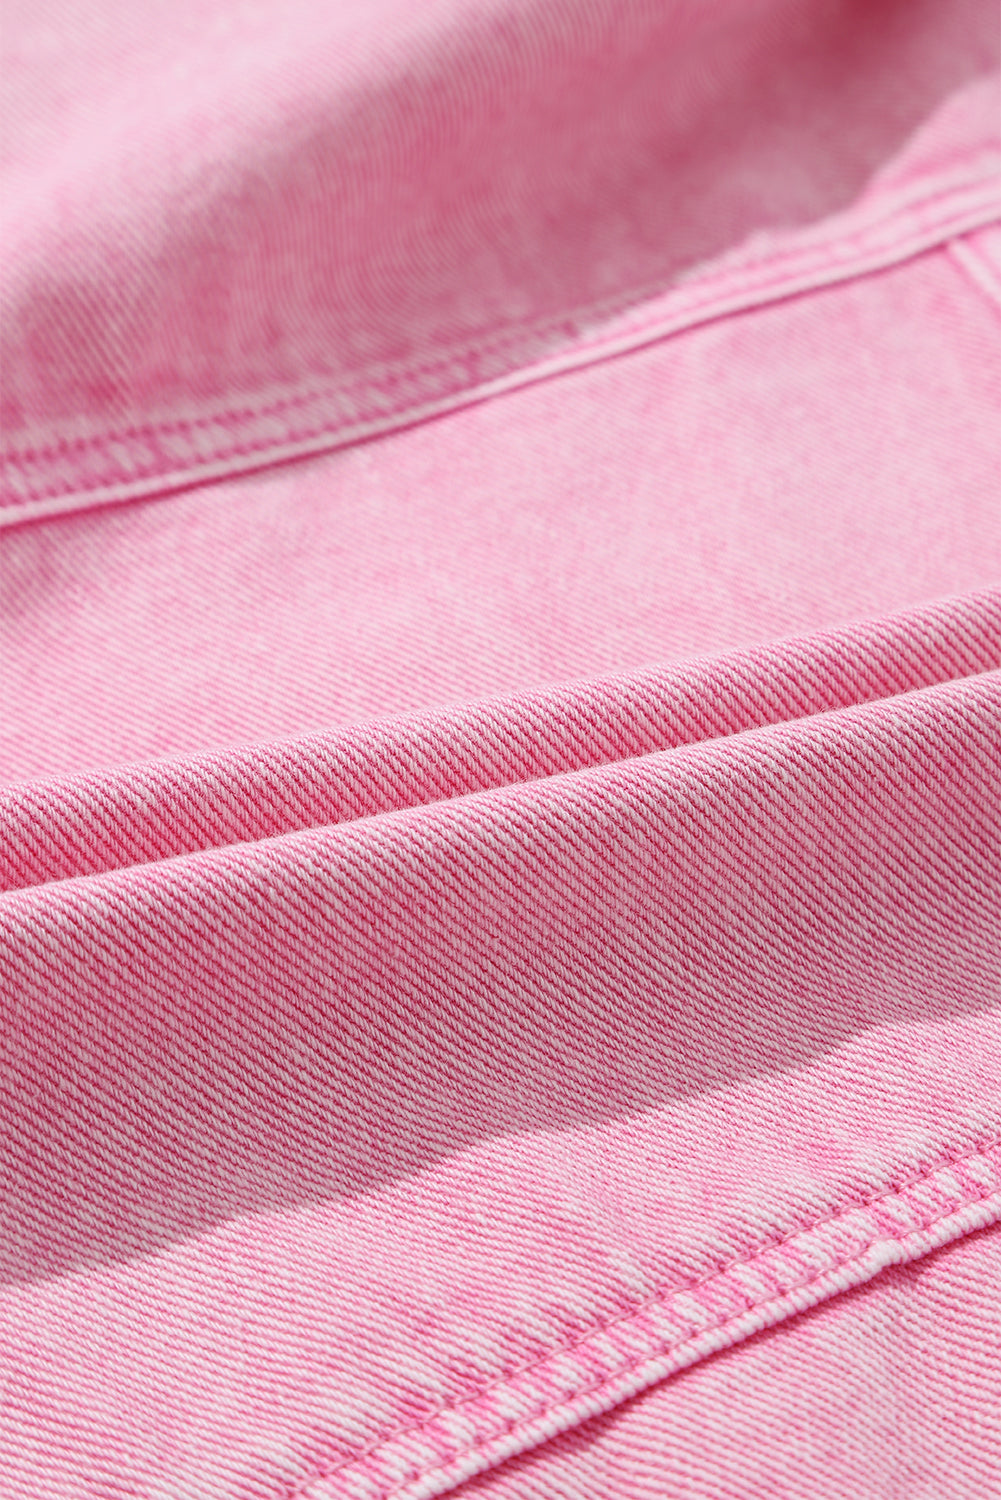 Rožnata jakna iz jeansa z žepi in zakovicami